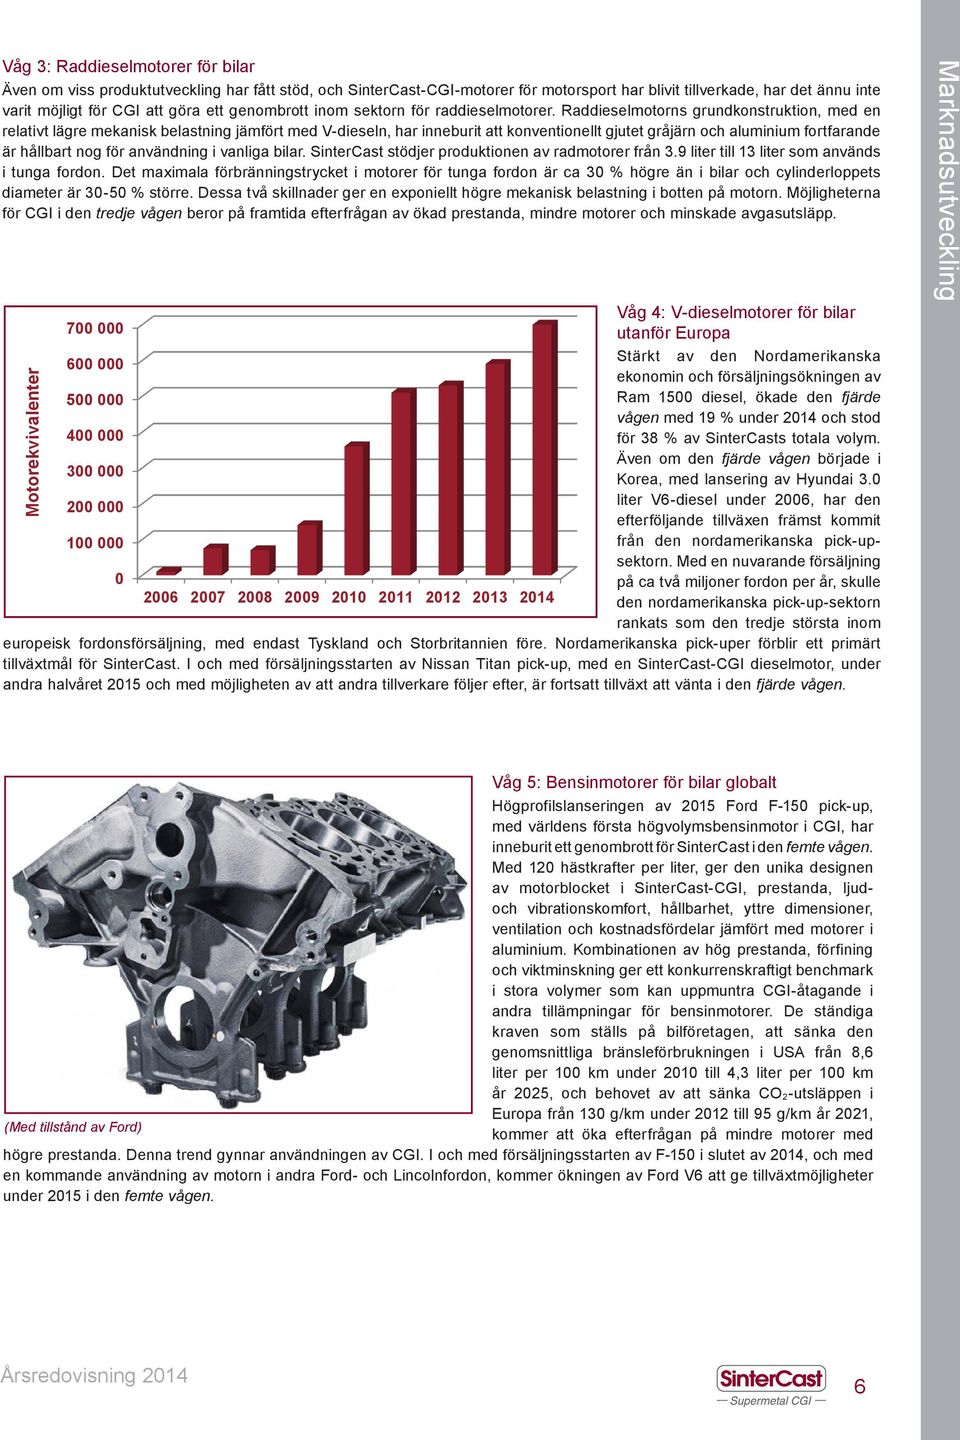 Raddieselmotorns grundkonstruktion, med en relativt lägre mekanisk belastning jämfört med V-dieseln, har inneburit att konventionellt gjutet gråjärn och aluminium fortfarande är hållbart nog för